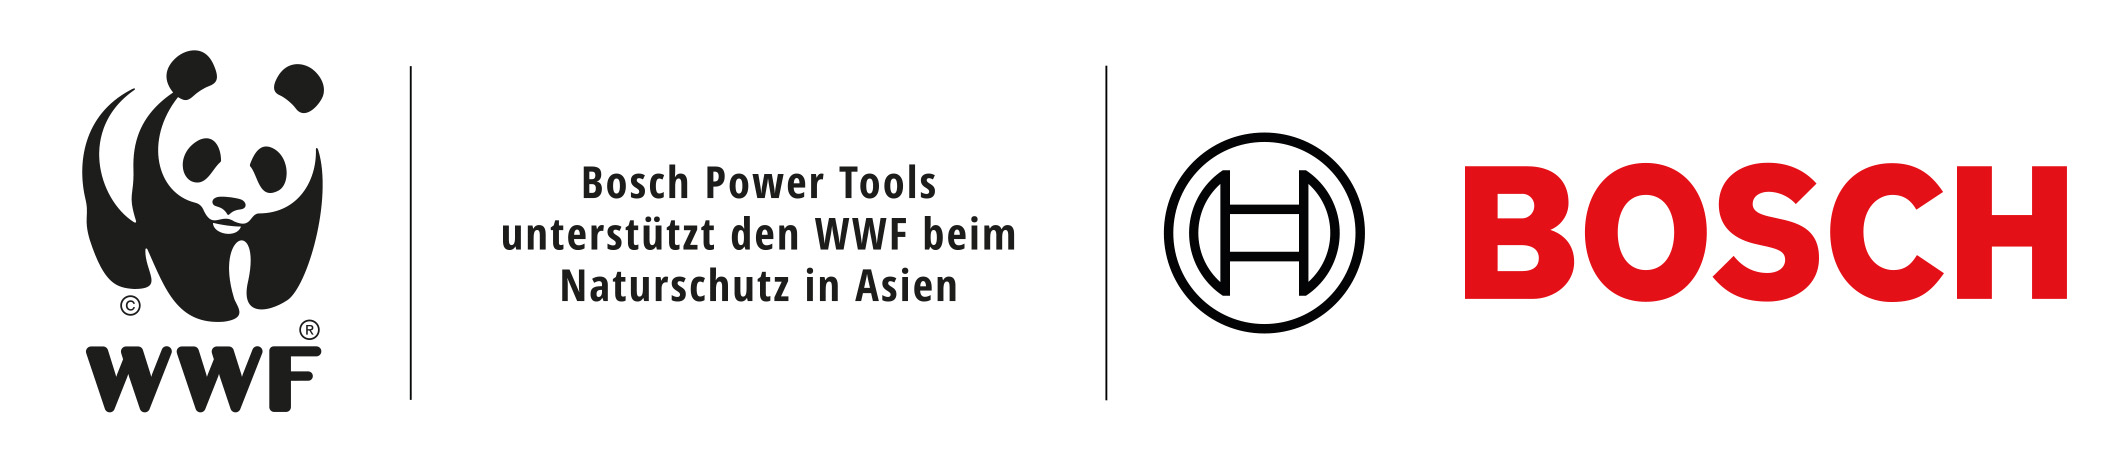 Nachhaltiges Wachstum bei Bosch Power Tools: Kooperation mit WWF verleiht Transformation Schub